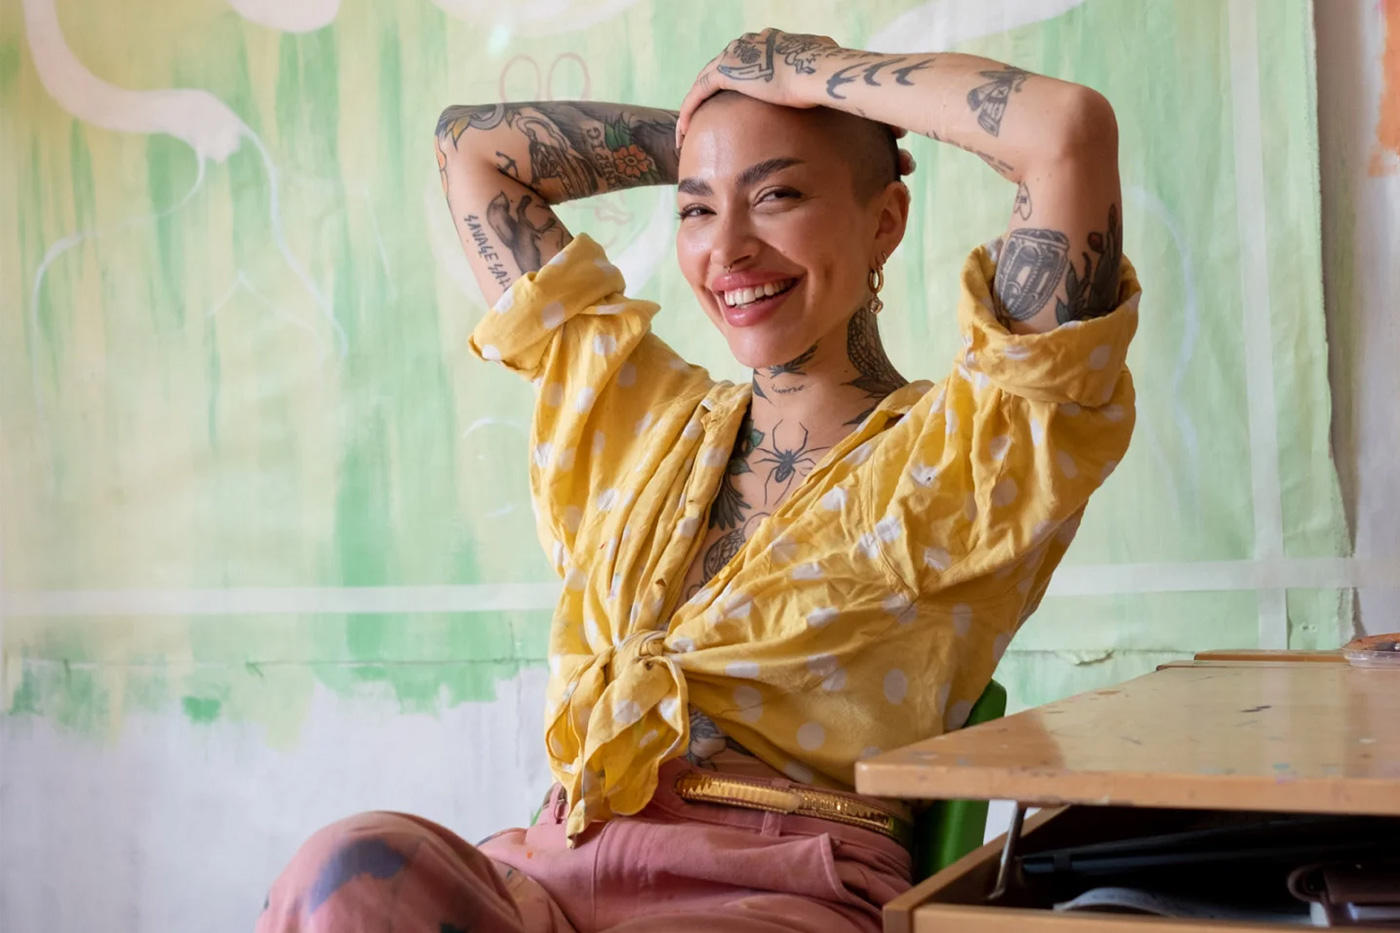 Meet the creatives: Björk Hijoort